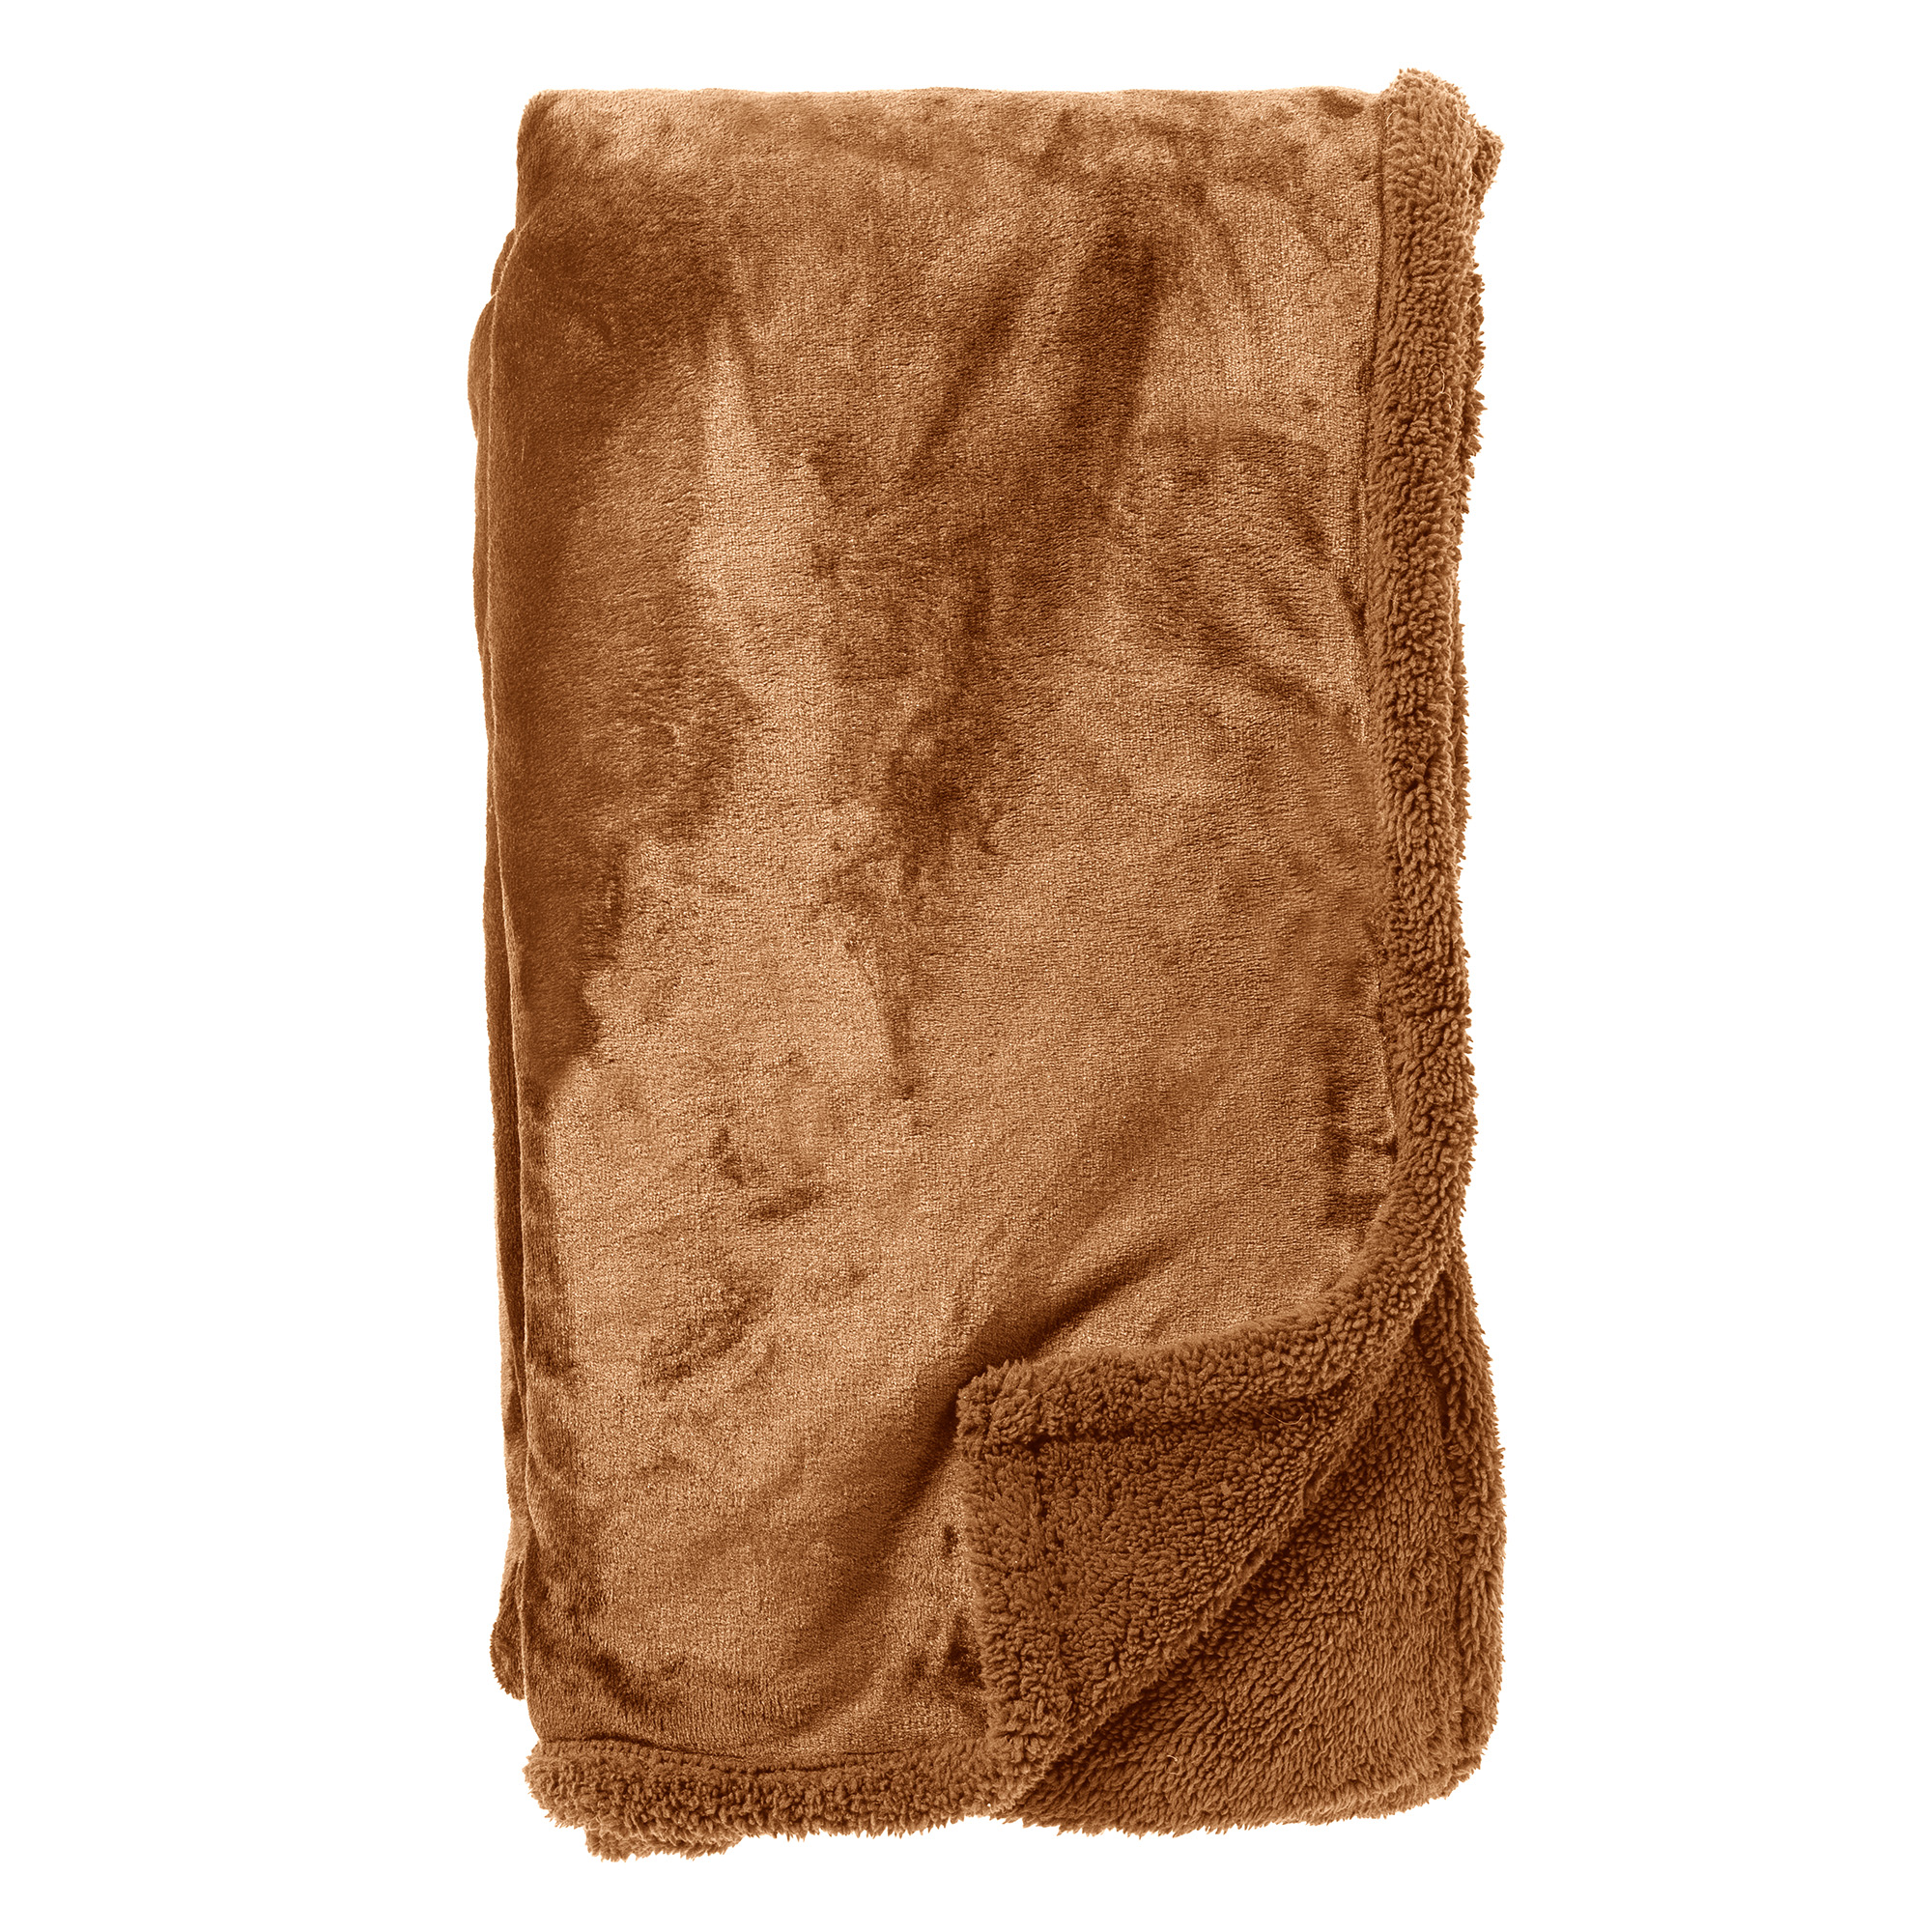 STANLEY - Plaid 150x200 cm - fleece deken met teddy en fleece - Tobacco Brown - bruin